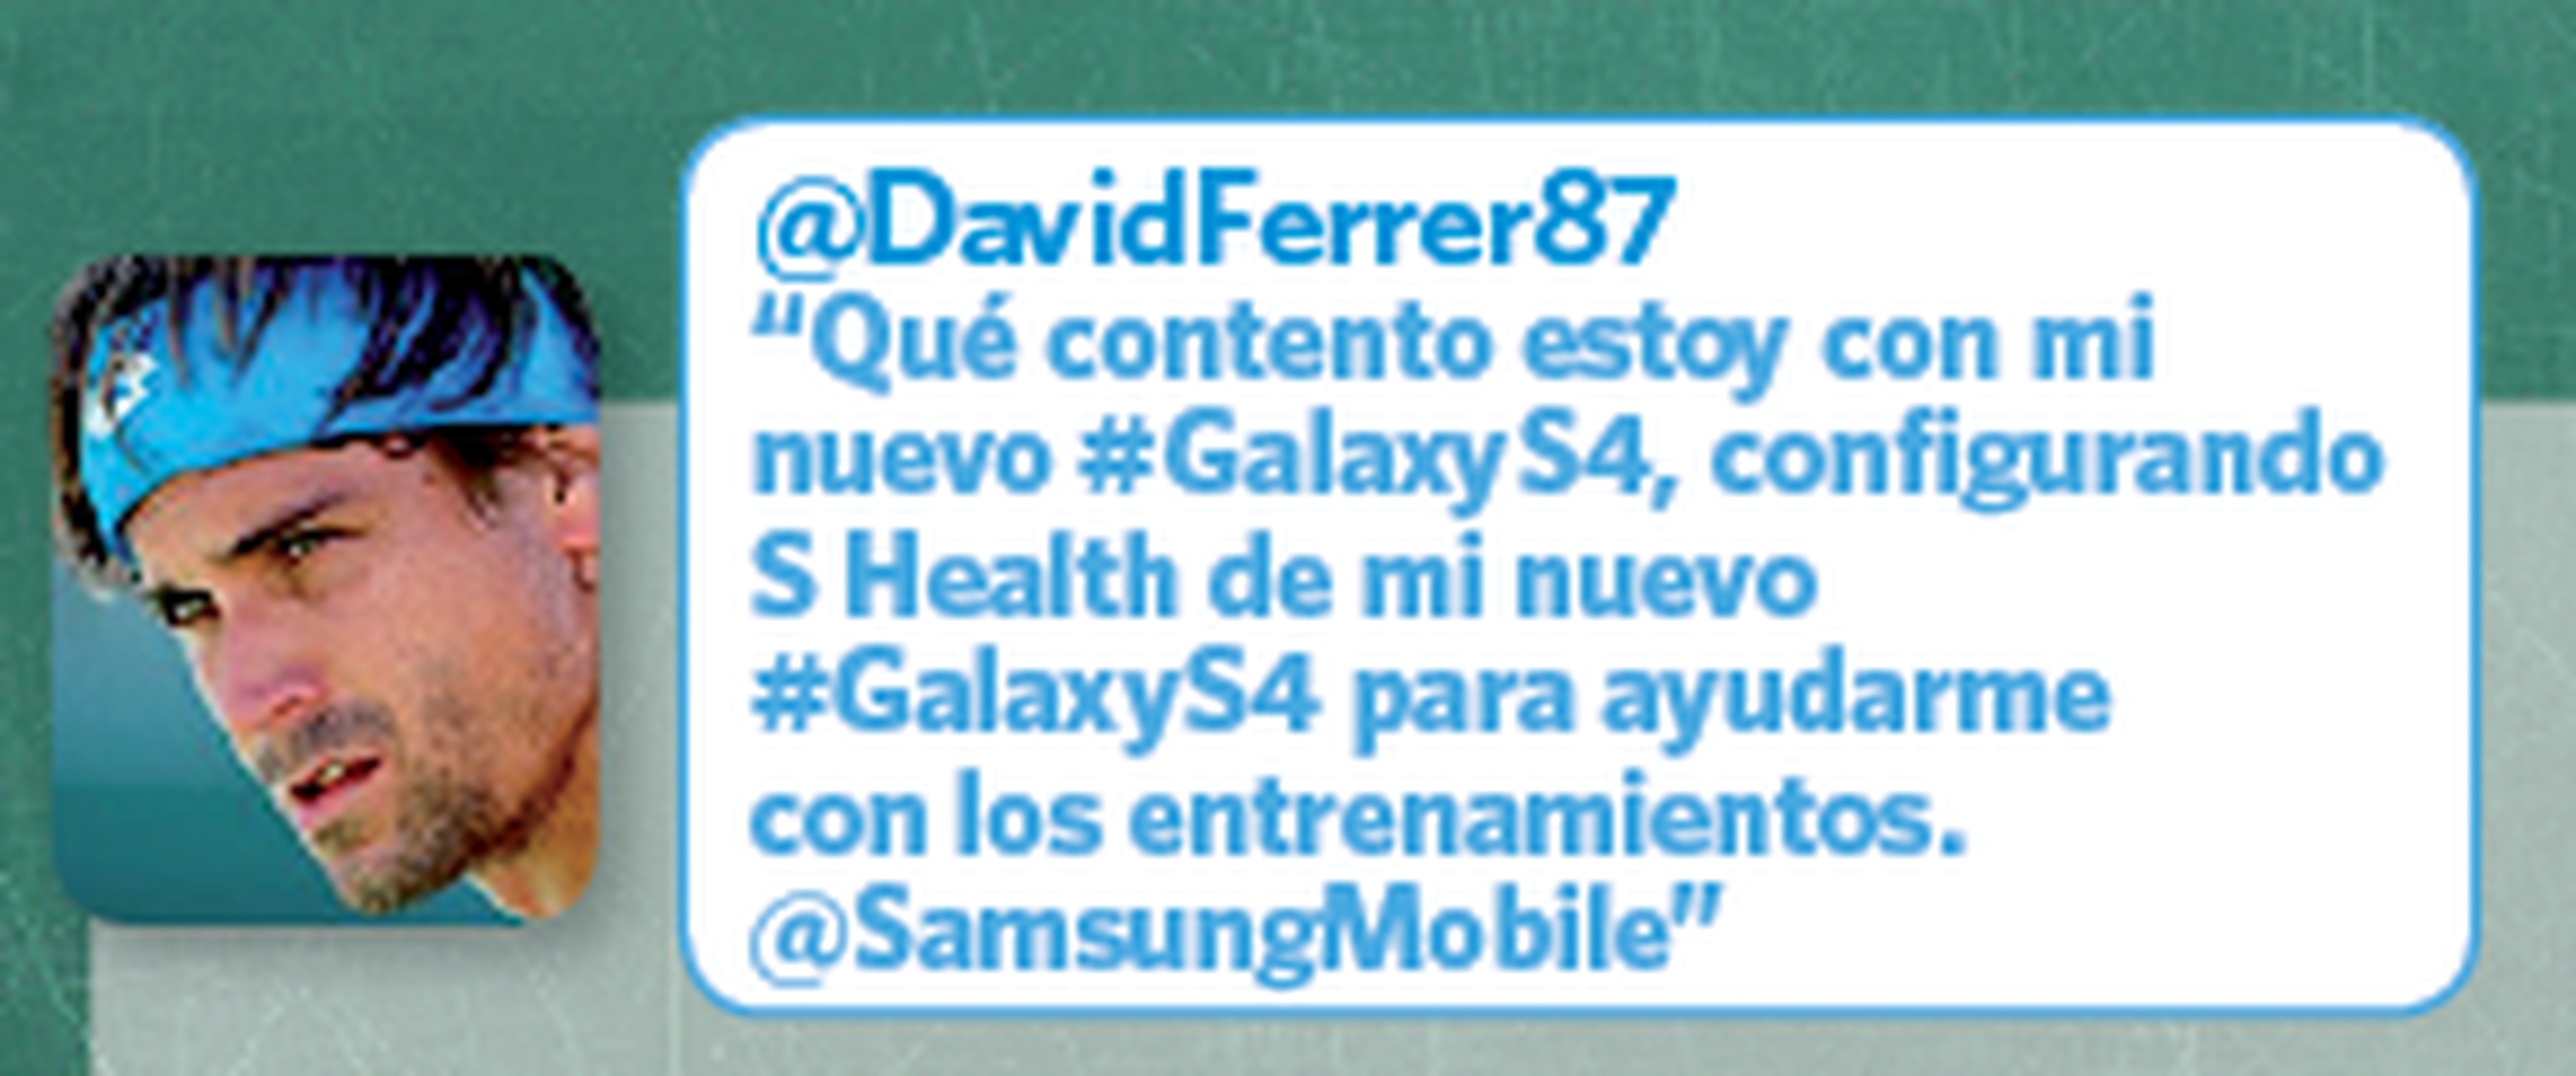 Twitter David Ferrer